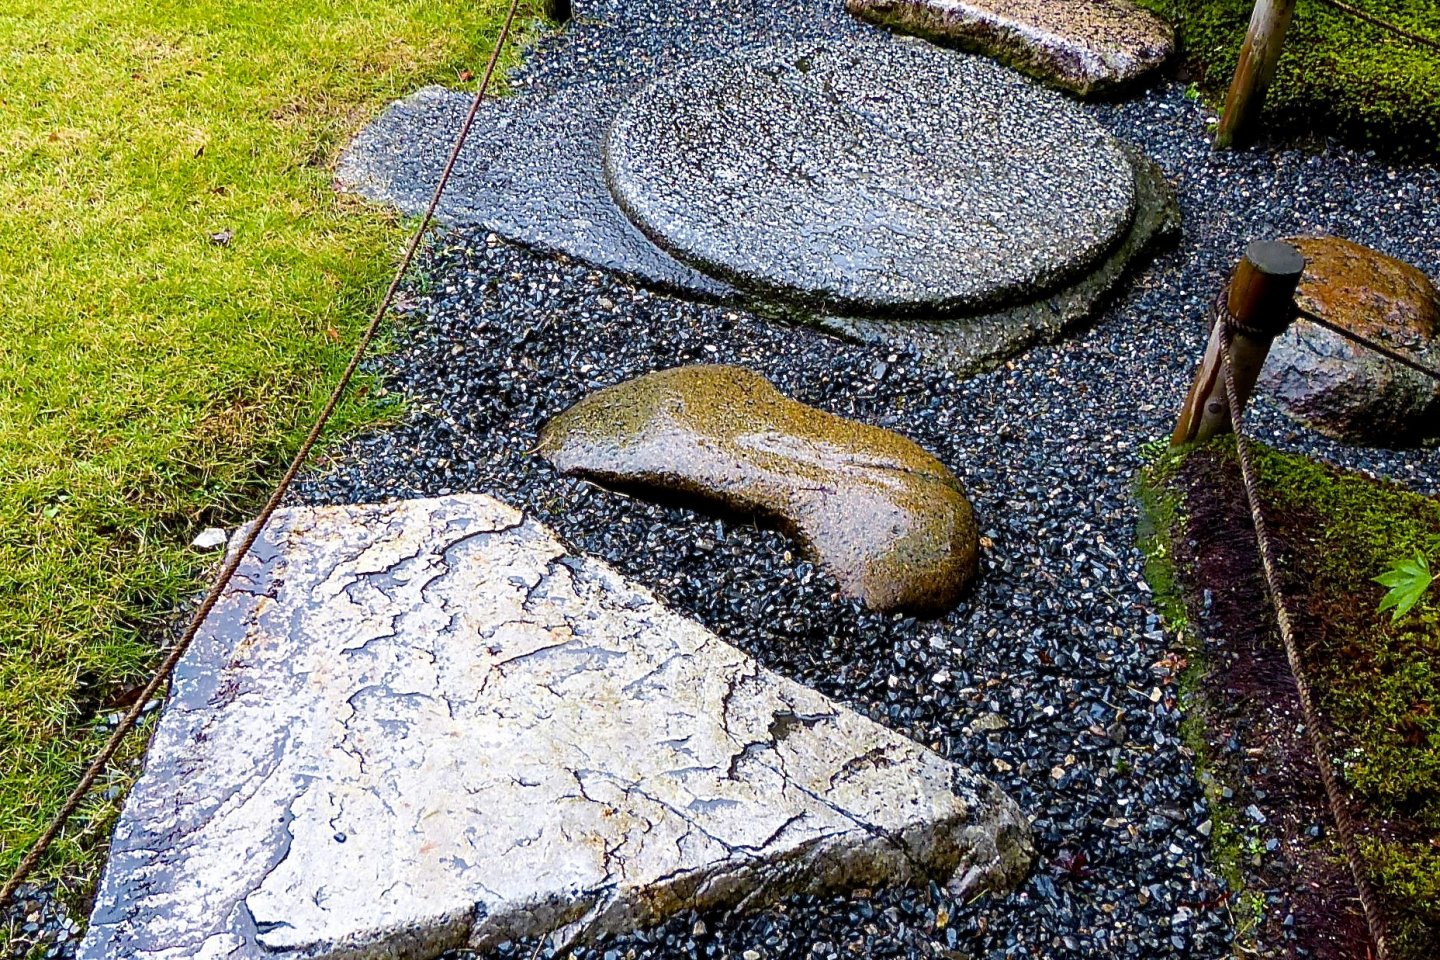 Stone steps arranged in a geometric pattern